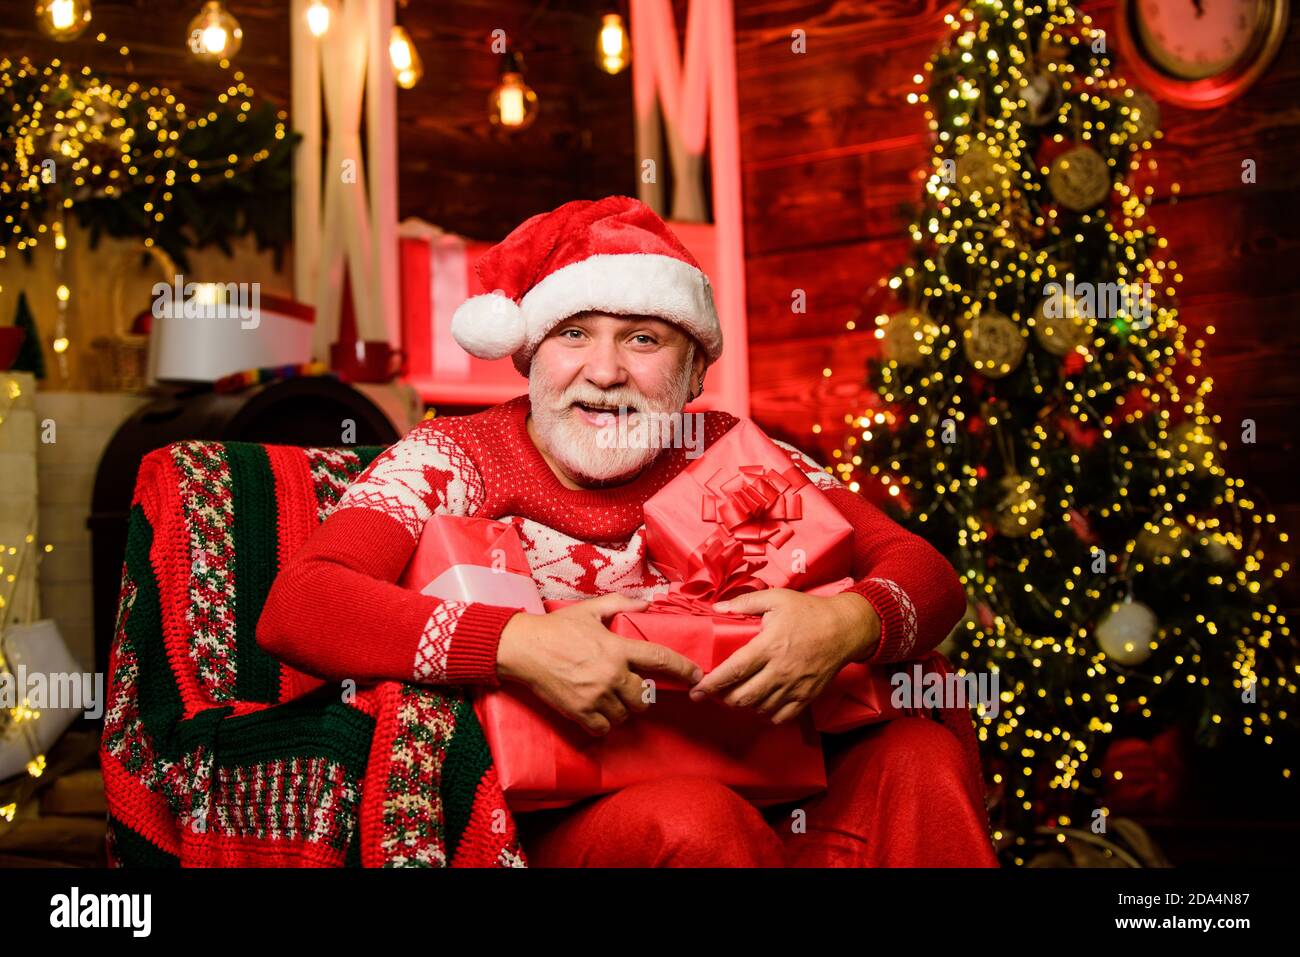 Weihnachtsmann entspannt im Sessel. Geschenke liefern. Winterurlaub. frohe  weihnachten. Älterer Opa zu Hause. Traditions-Konzept. Weihnachtsmann in  der Nähe von weihnachtsbaum. Bärtiger älterer Mann Santa Claus  Stockfotografie - Alamy